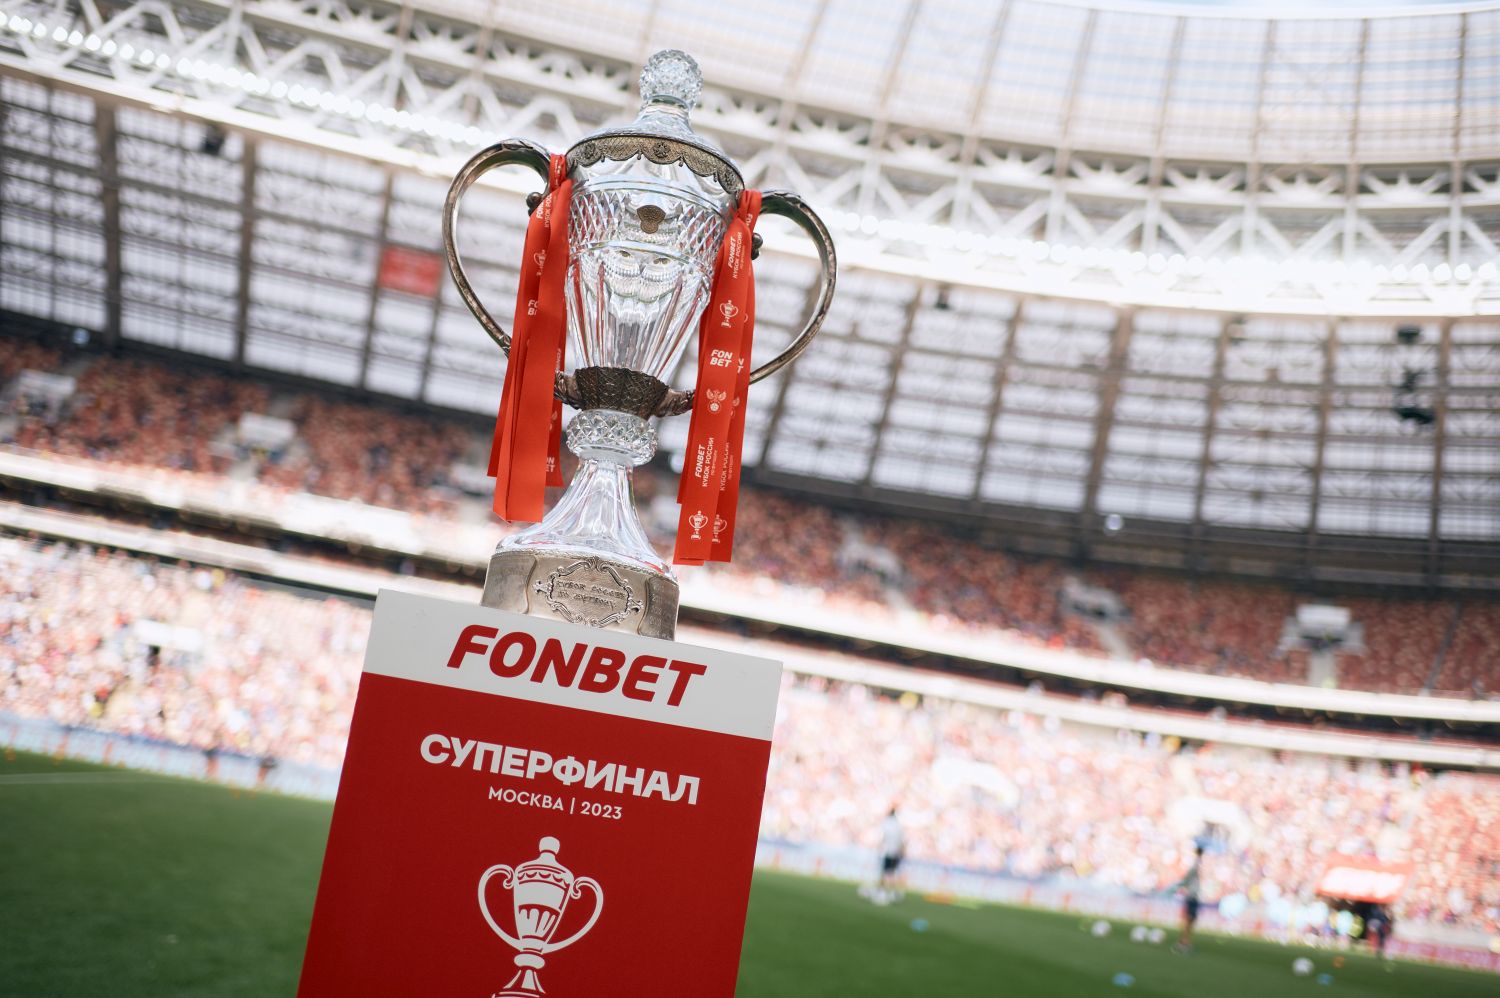 Около ₽1,2 млрд тратит FONBET на активацию спонсорского контракта с Кубком России по футболу